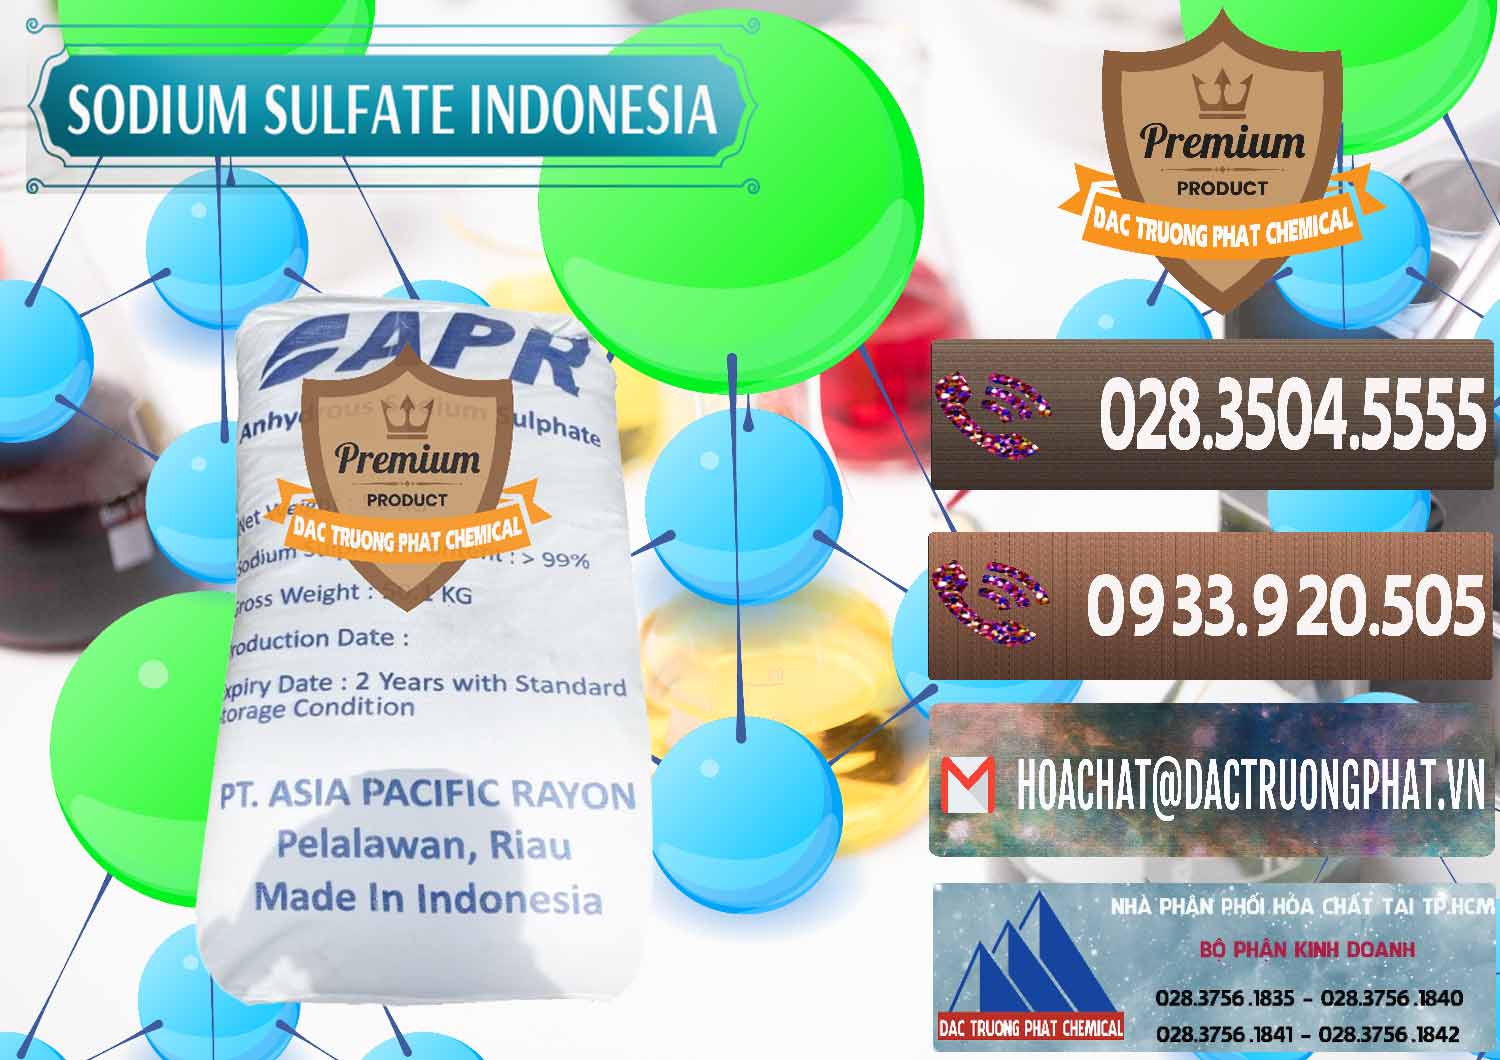 Công ty chuyên kinh doanh ( bán ) Sodium Sulphate - Muối Sunfat Na2SO4 APR Indonesia - 0460 - Chuyên phân phối & cung ứng hóa chất tại TP.HCM - hoachatviet.net